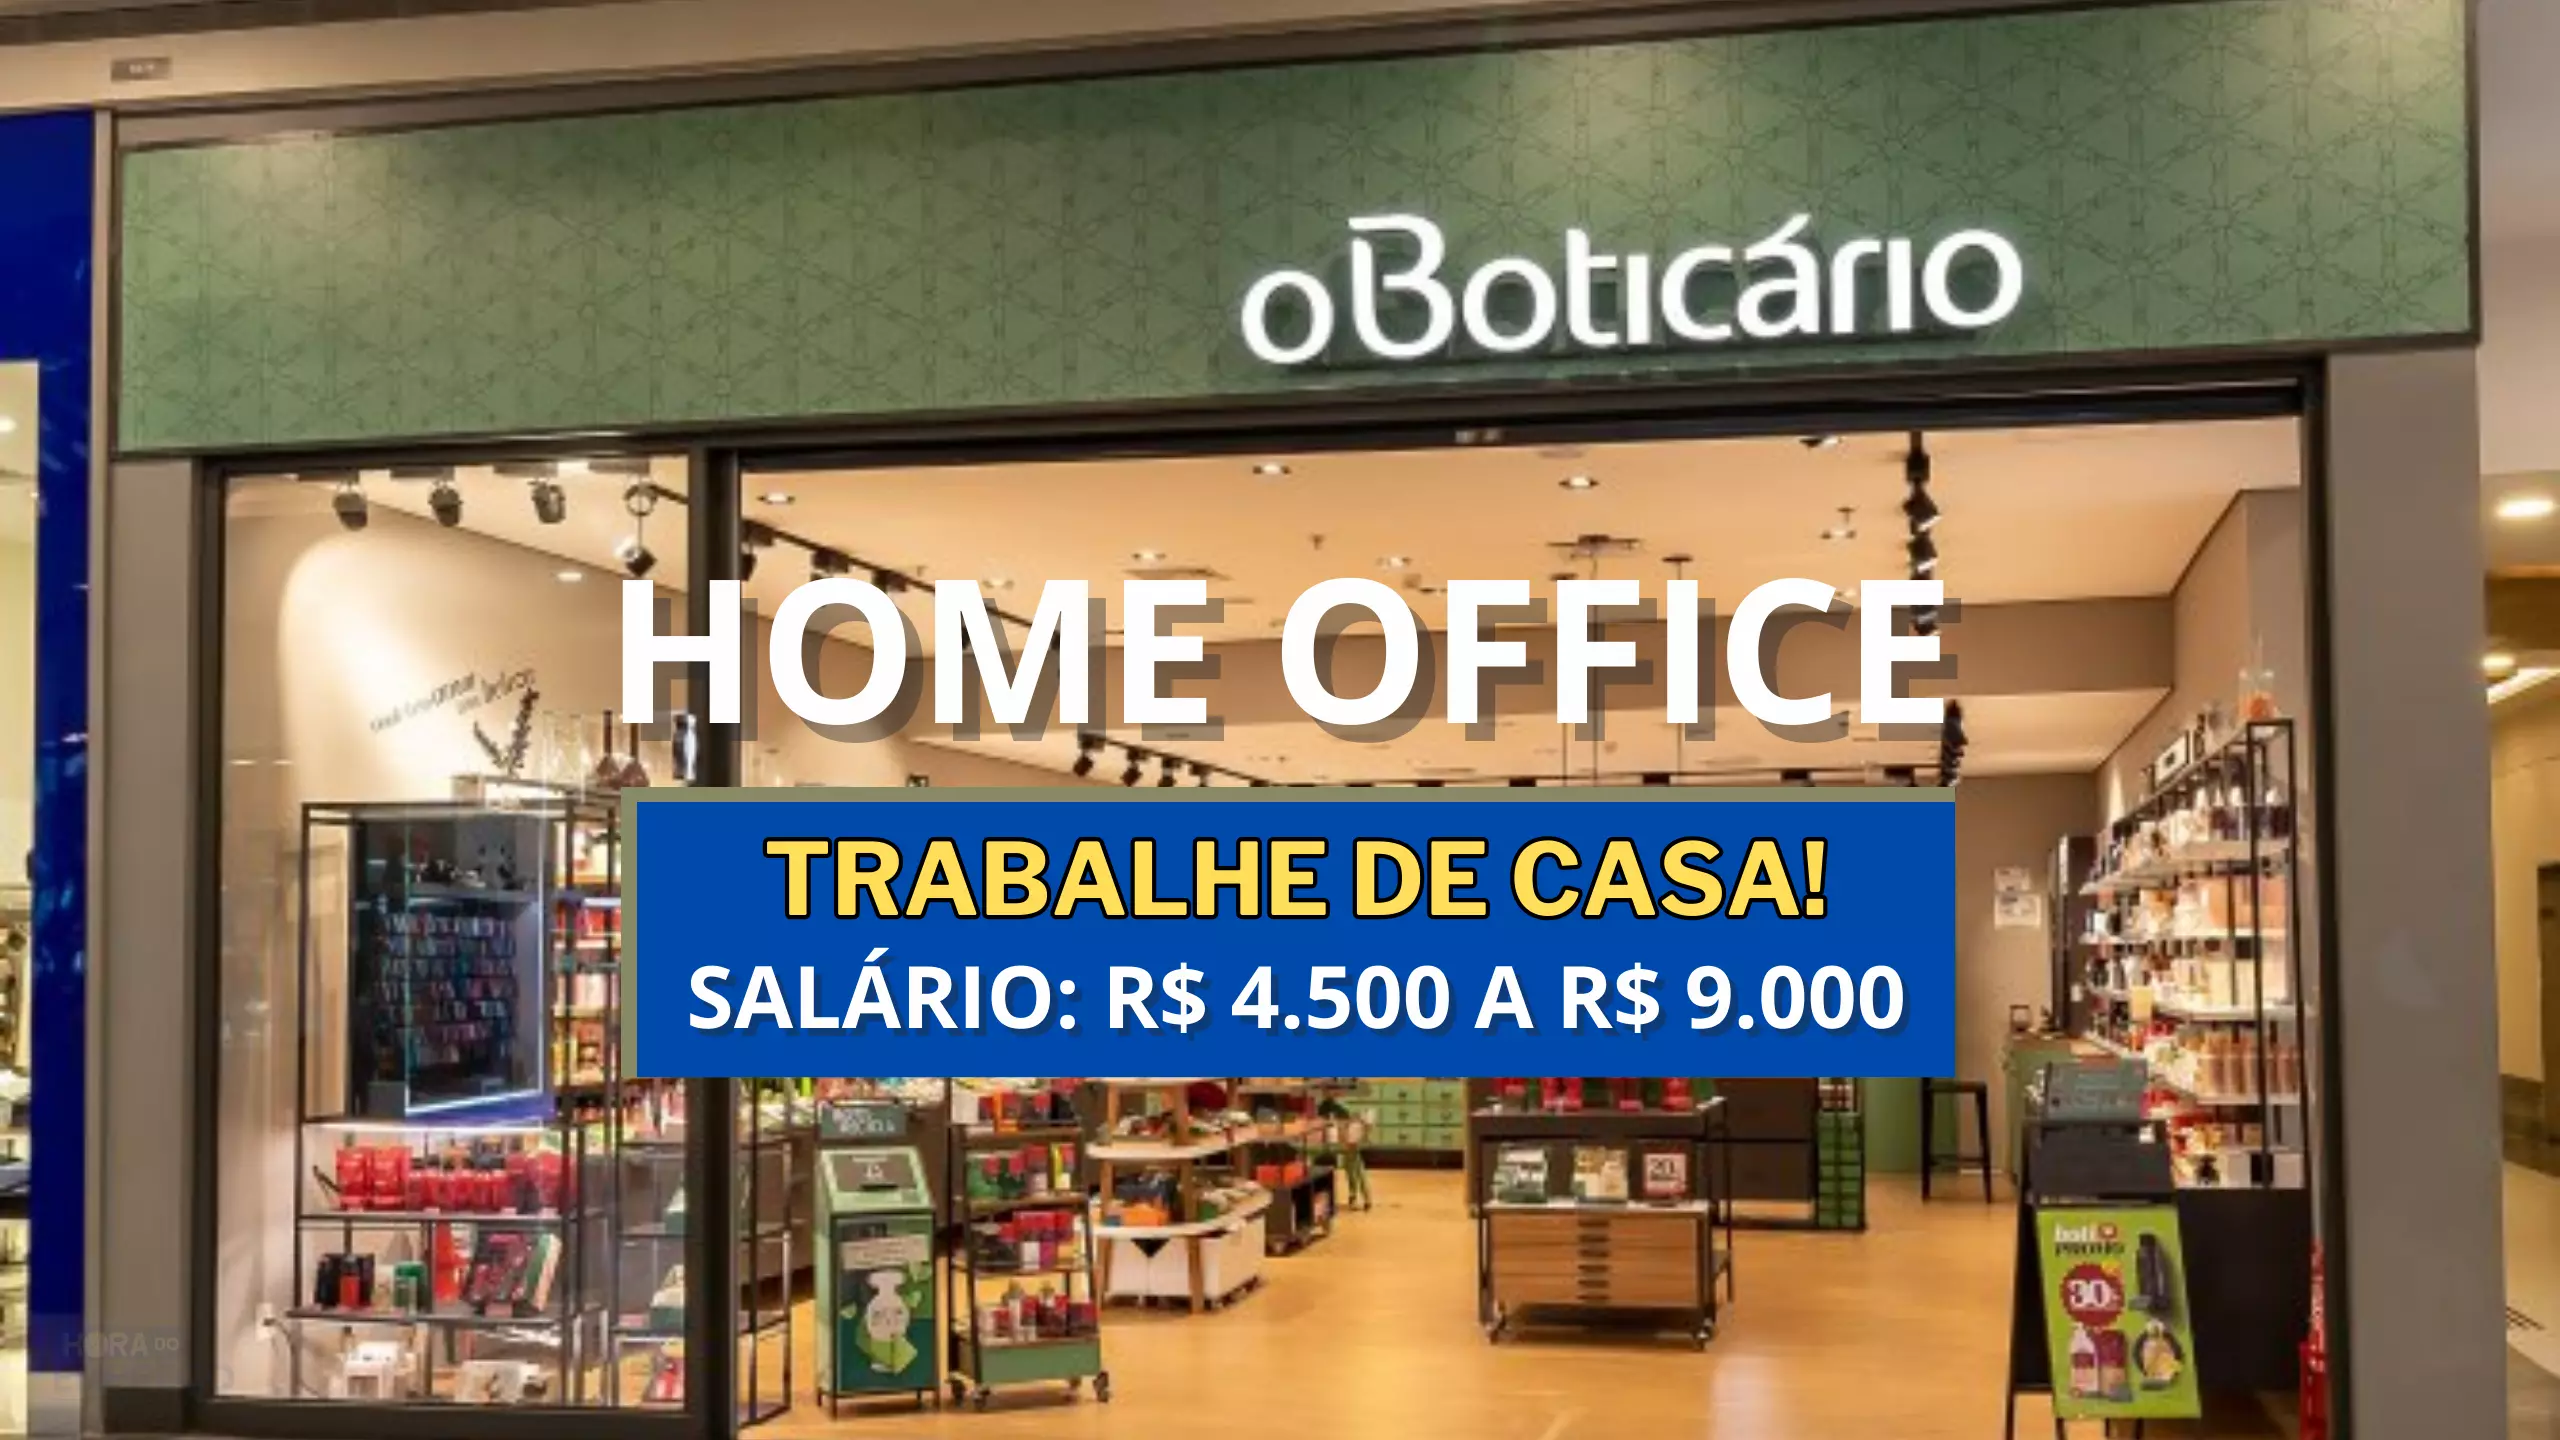 Grupo Boticário anuncia vaga 100% HOME OFFICE na área de vendas com salário de R$ 4.500 a R$ 9.000 INICIAL